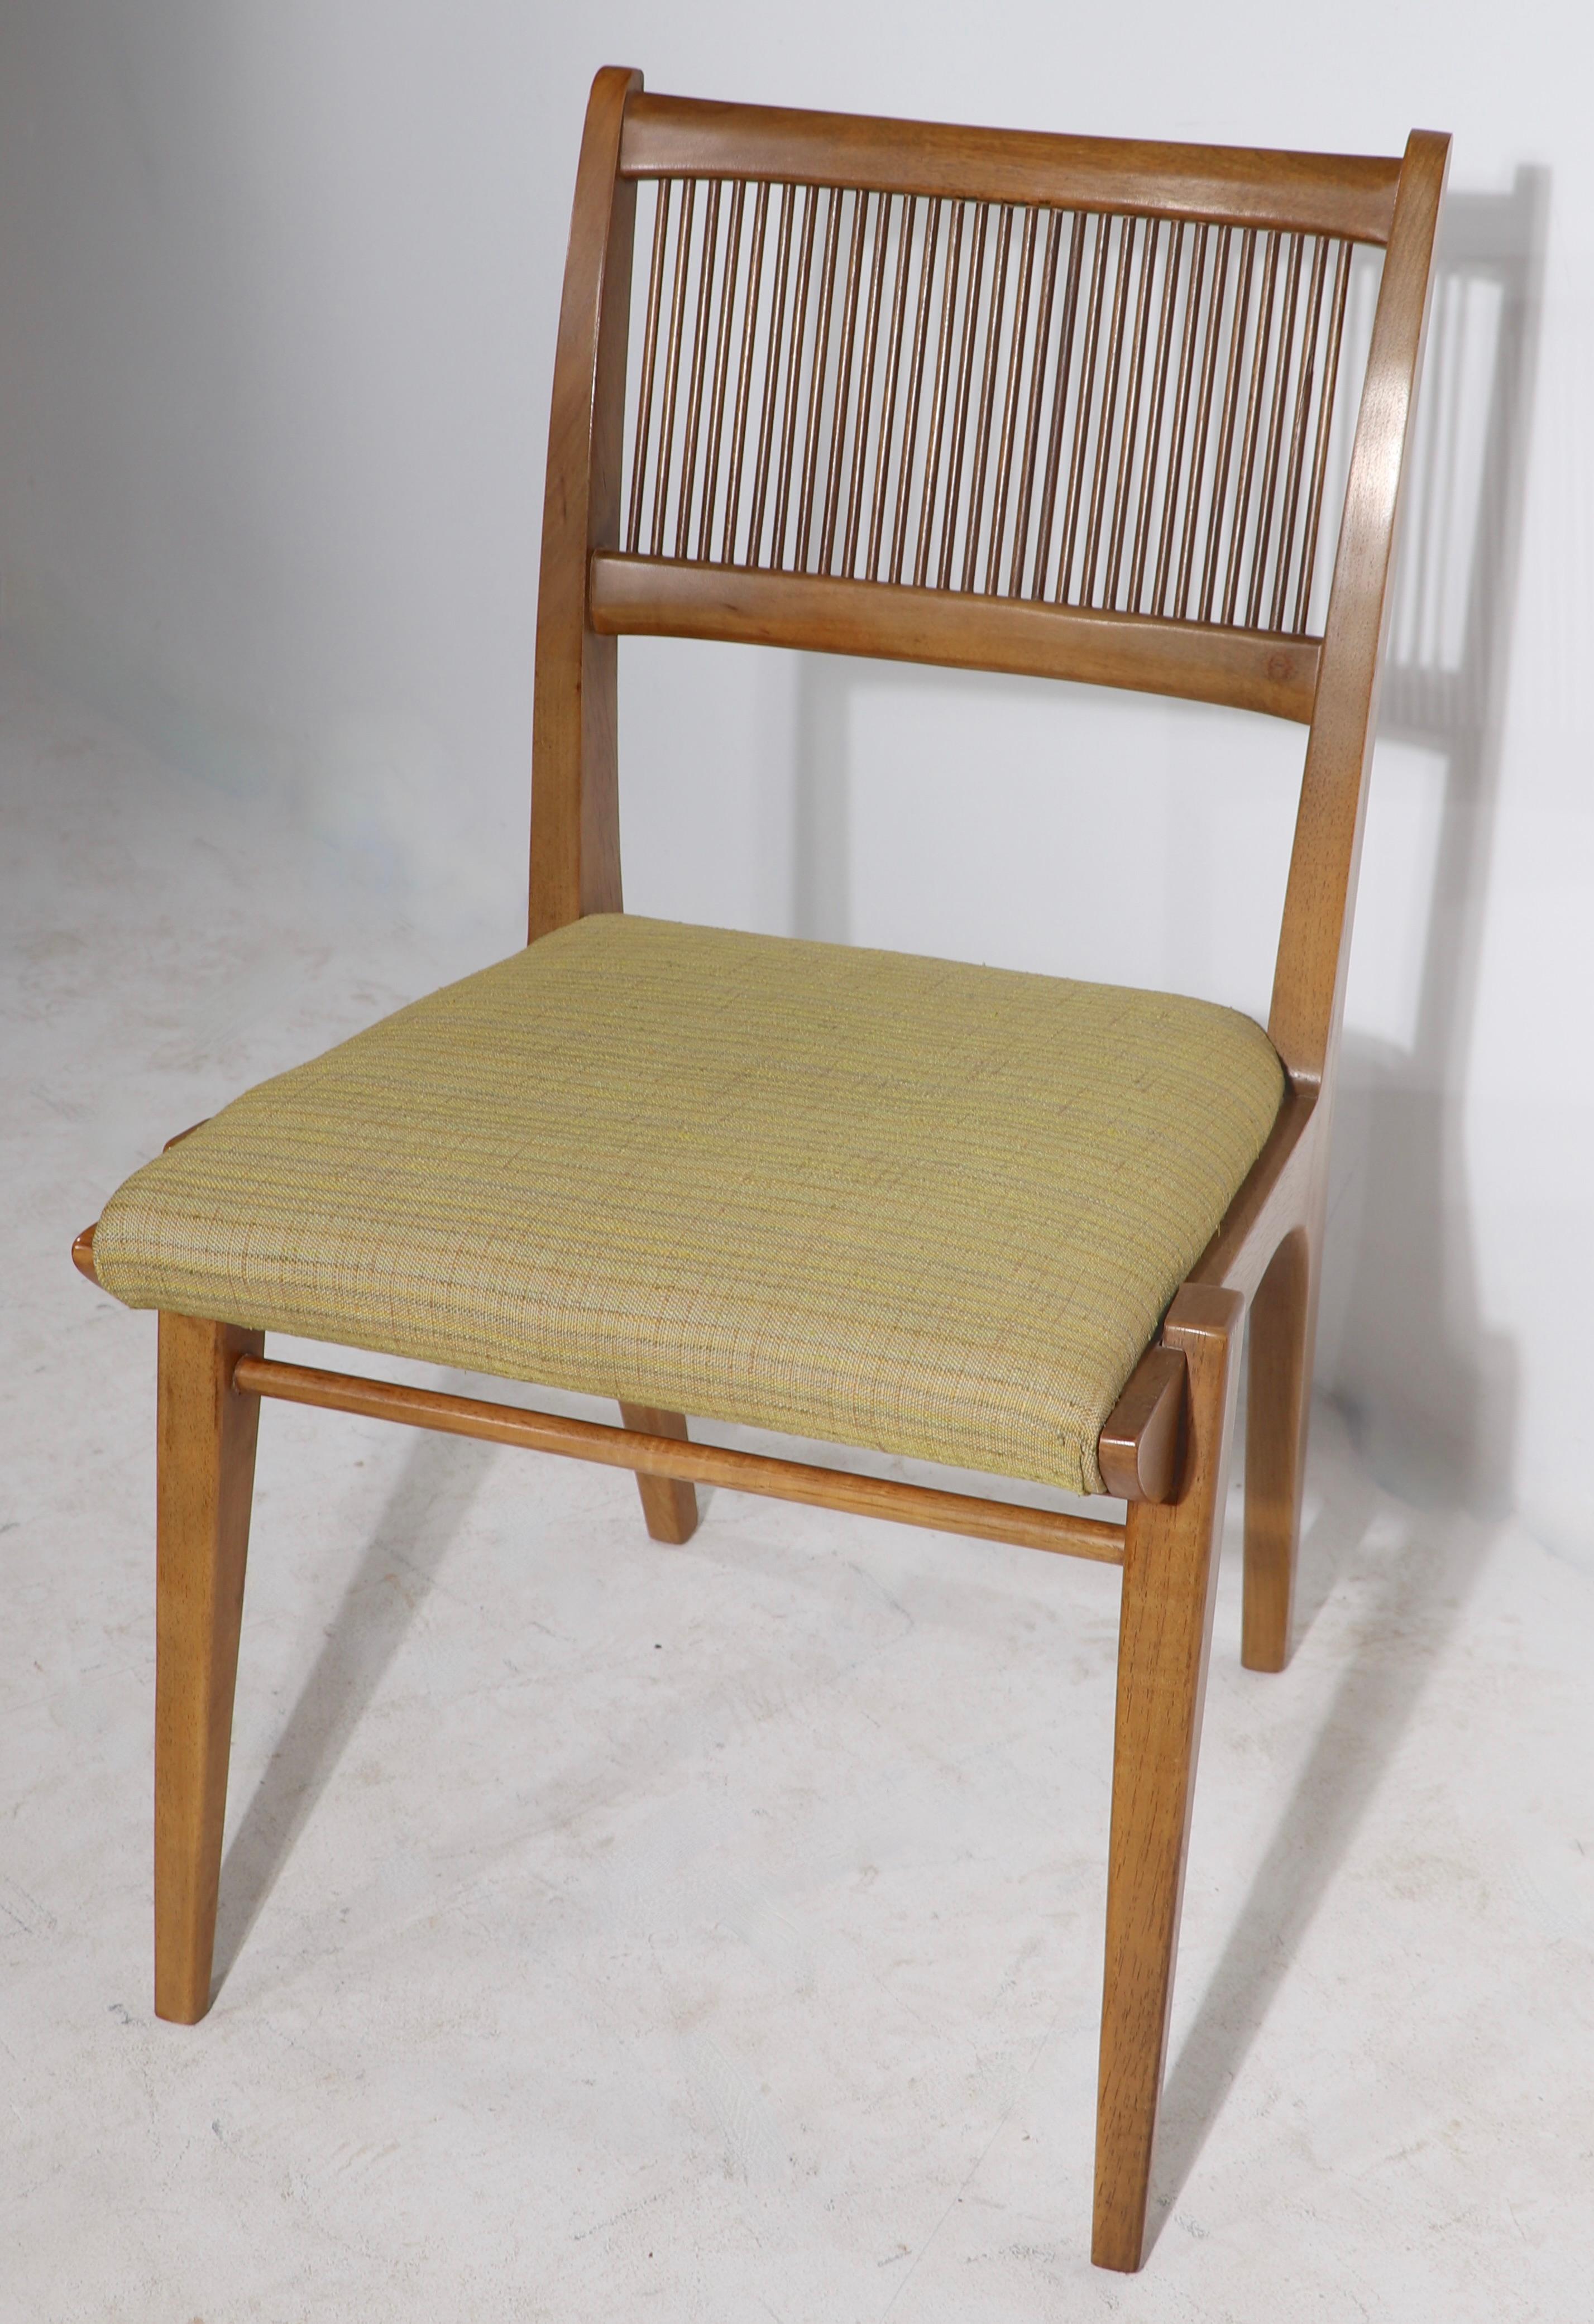 Exquisiter Satz von Esszimmerstühlen aus der Mitte des Jahrhunderts, entworfen von John Van Koert für die klassische Profile-Serie, hergestellt von Drexel. CIRCA 1950 ( 1957 ), die Stühle haben einen geschnitzten Rahmen aus massivem Nussbaumholz,